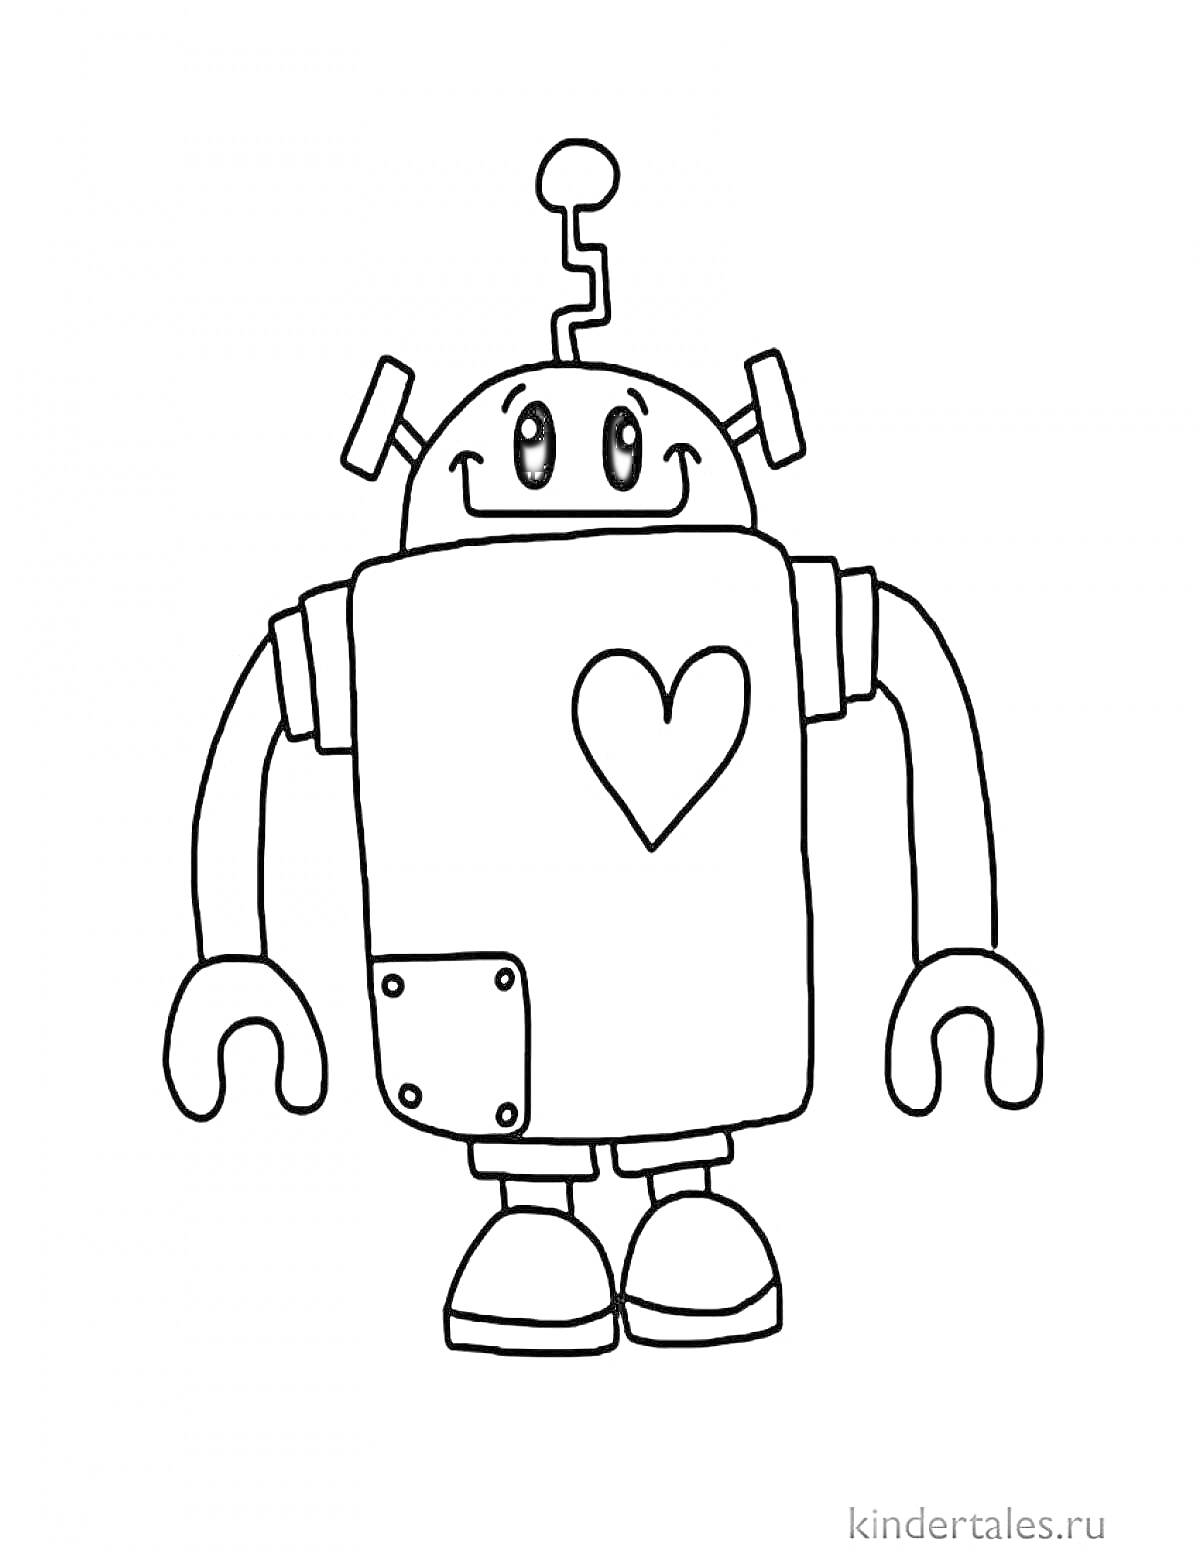 Раскраска Игрушечный робот с антенной, сердцем и панелями на теле